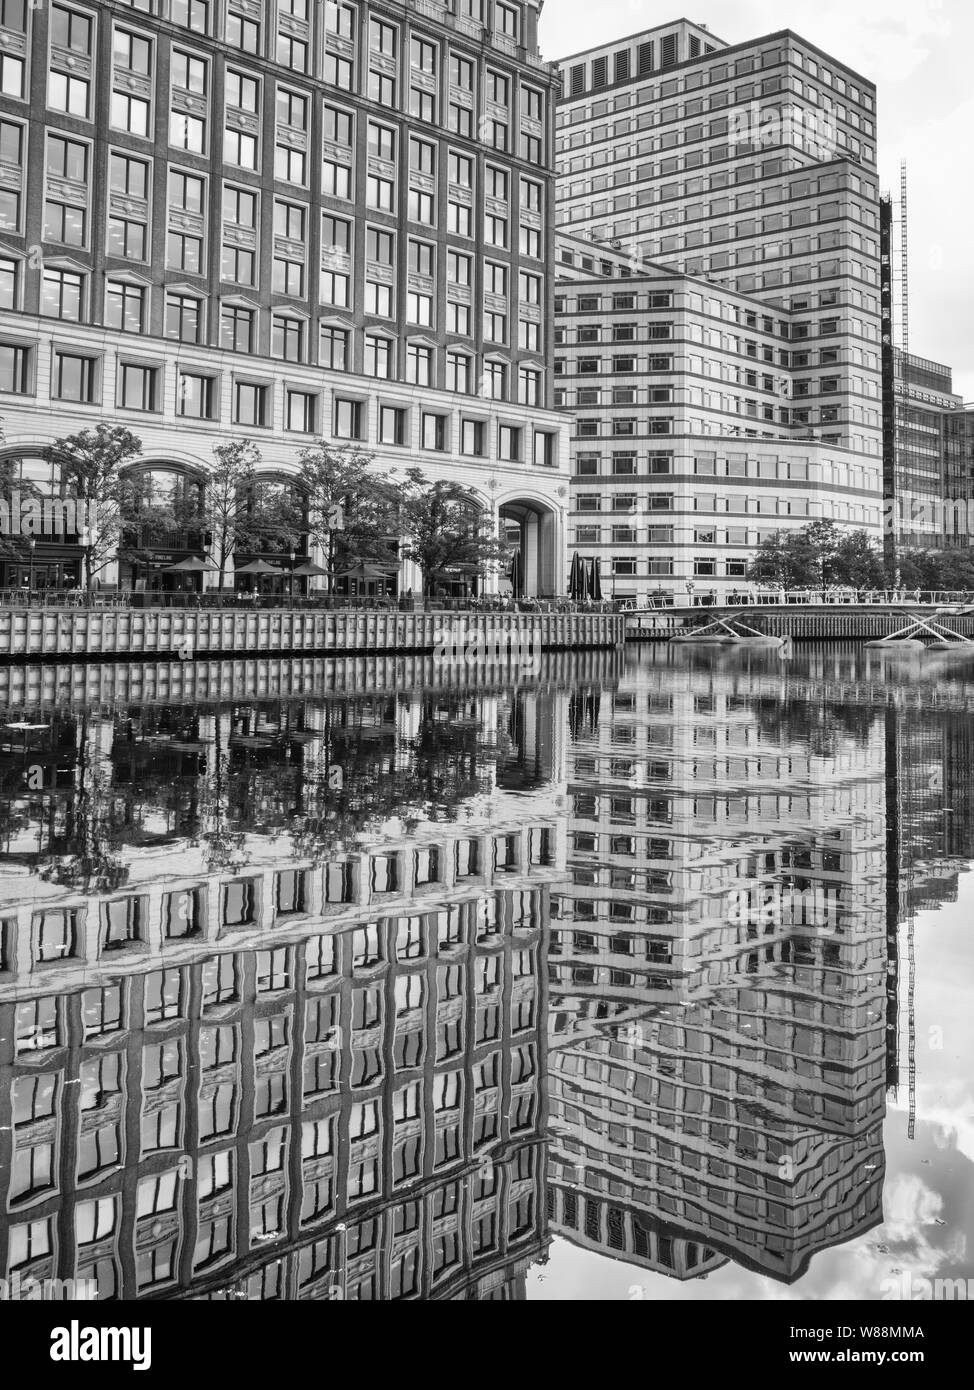 Les immeubles de bureaux avec matrice régulière des fenêtres et des reflets dans l'eau à Londres, West India Quay Banque D'Images